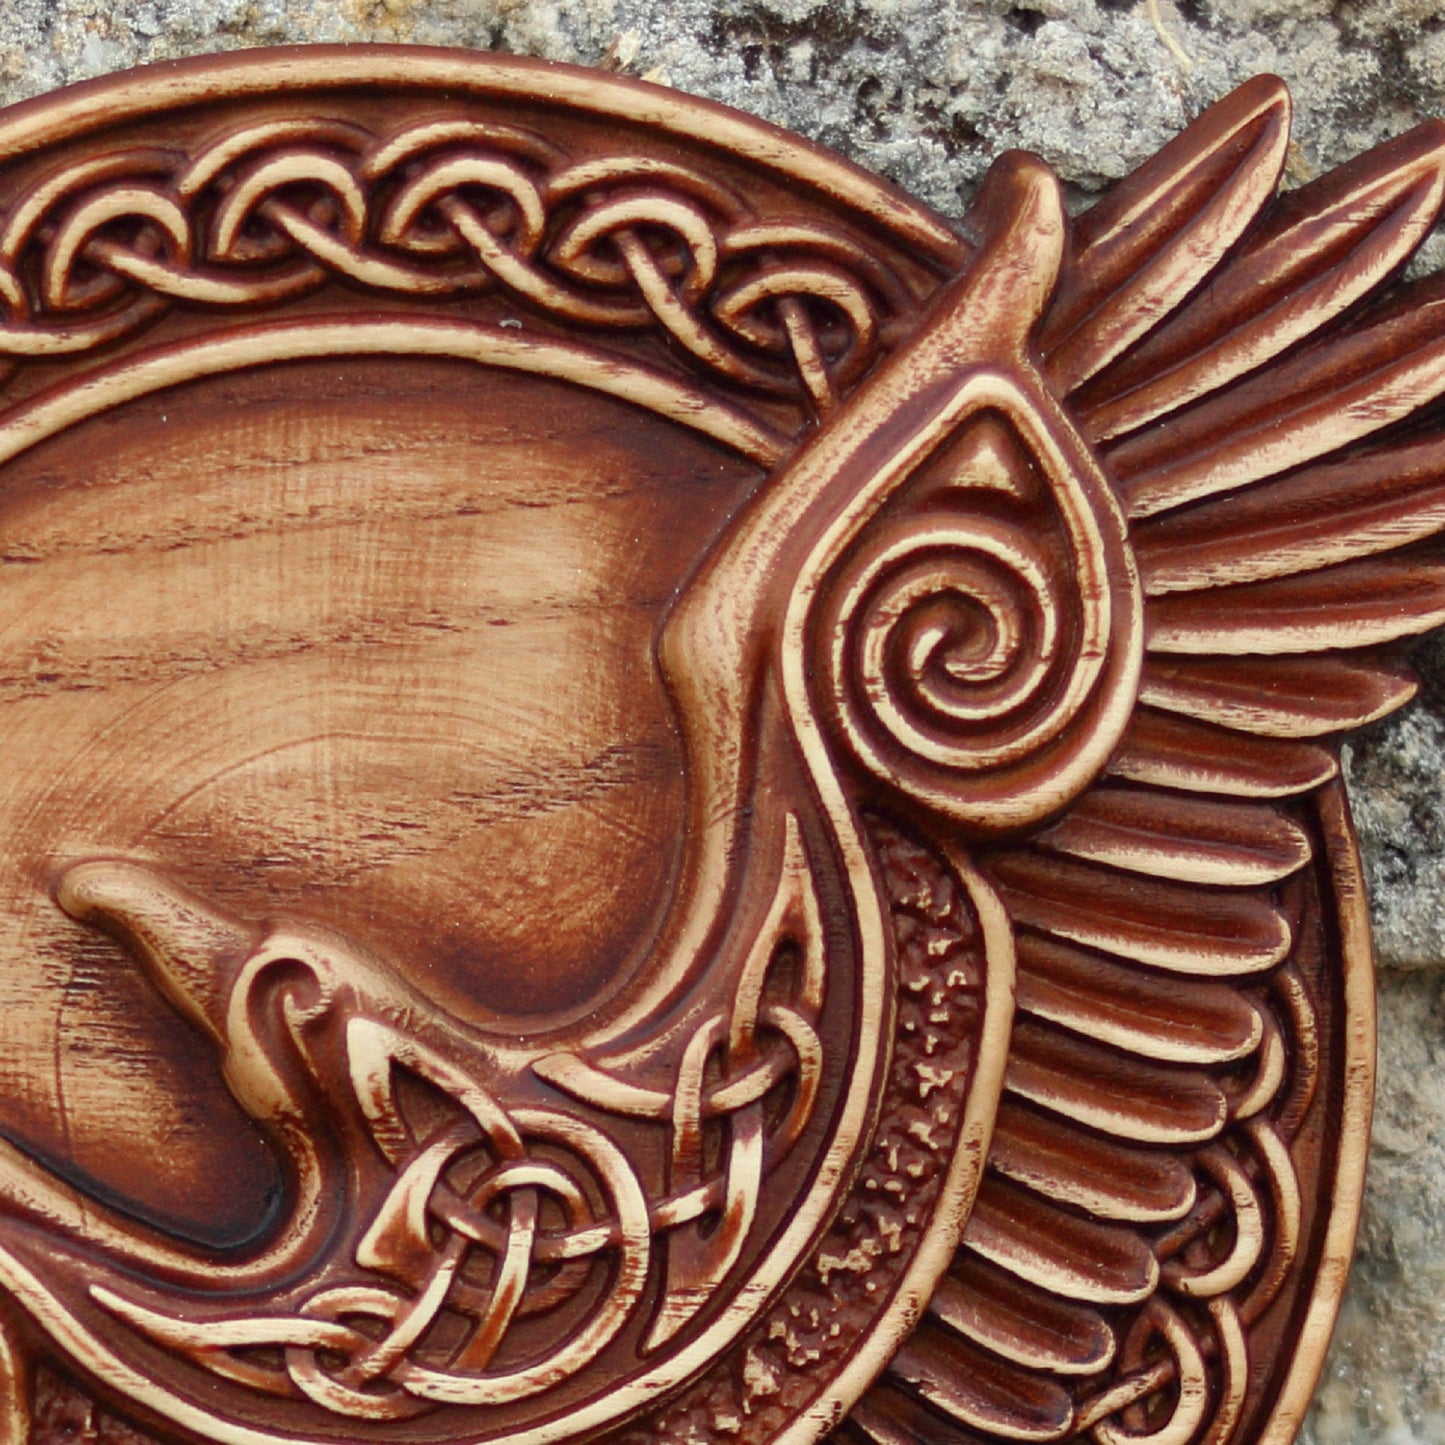 A raven handmade wooden panel